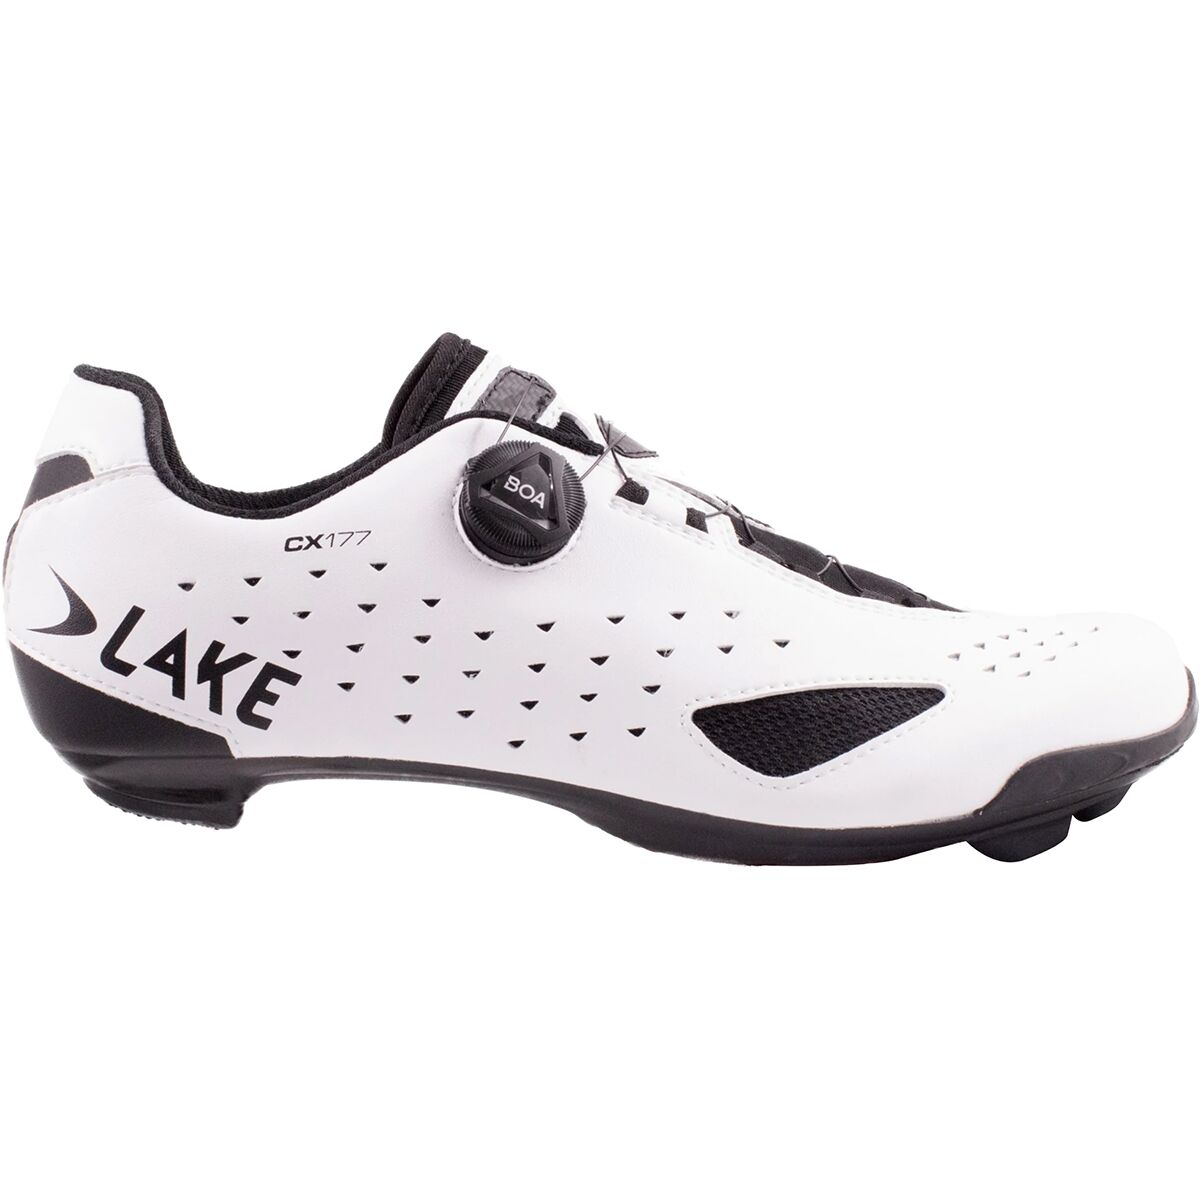 Lake CX177 Wide Cycling Shoe - Men's White/Black, 41.0